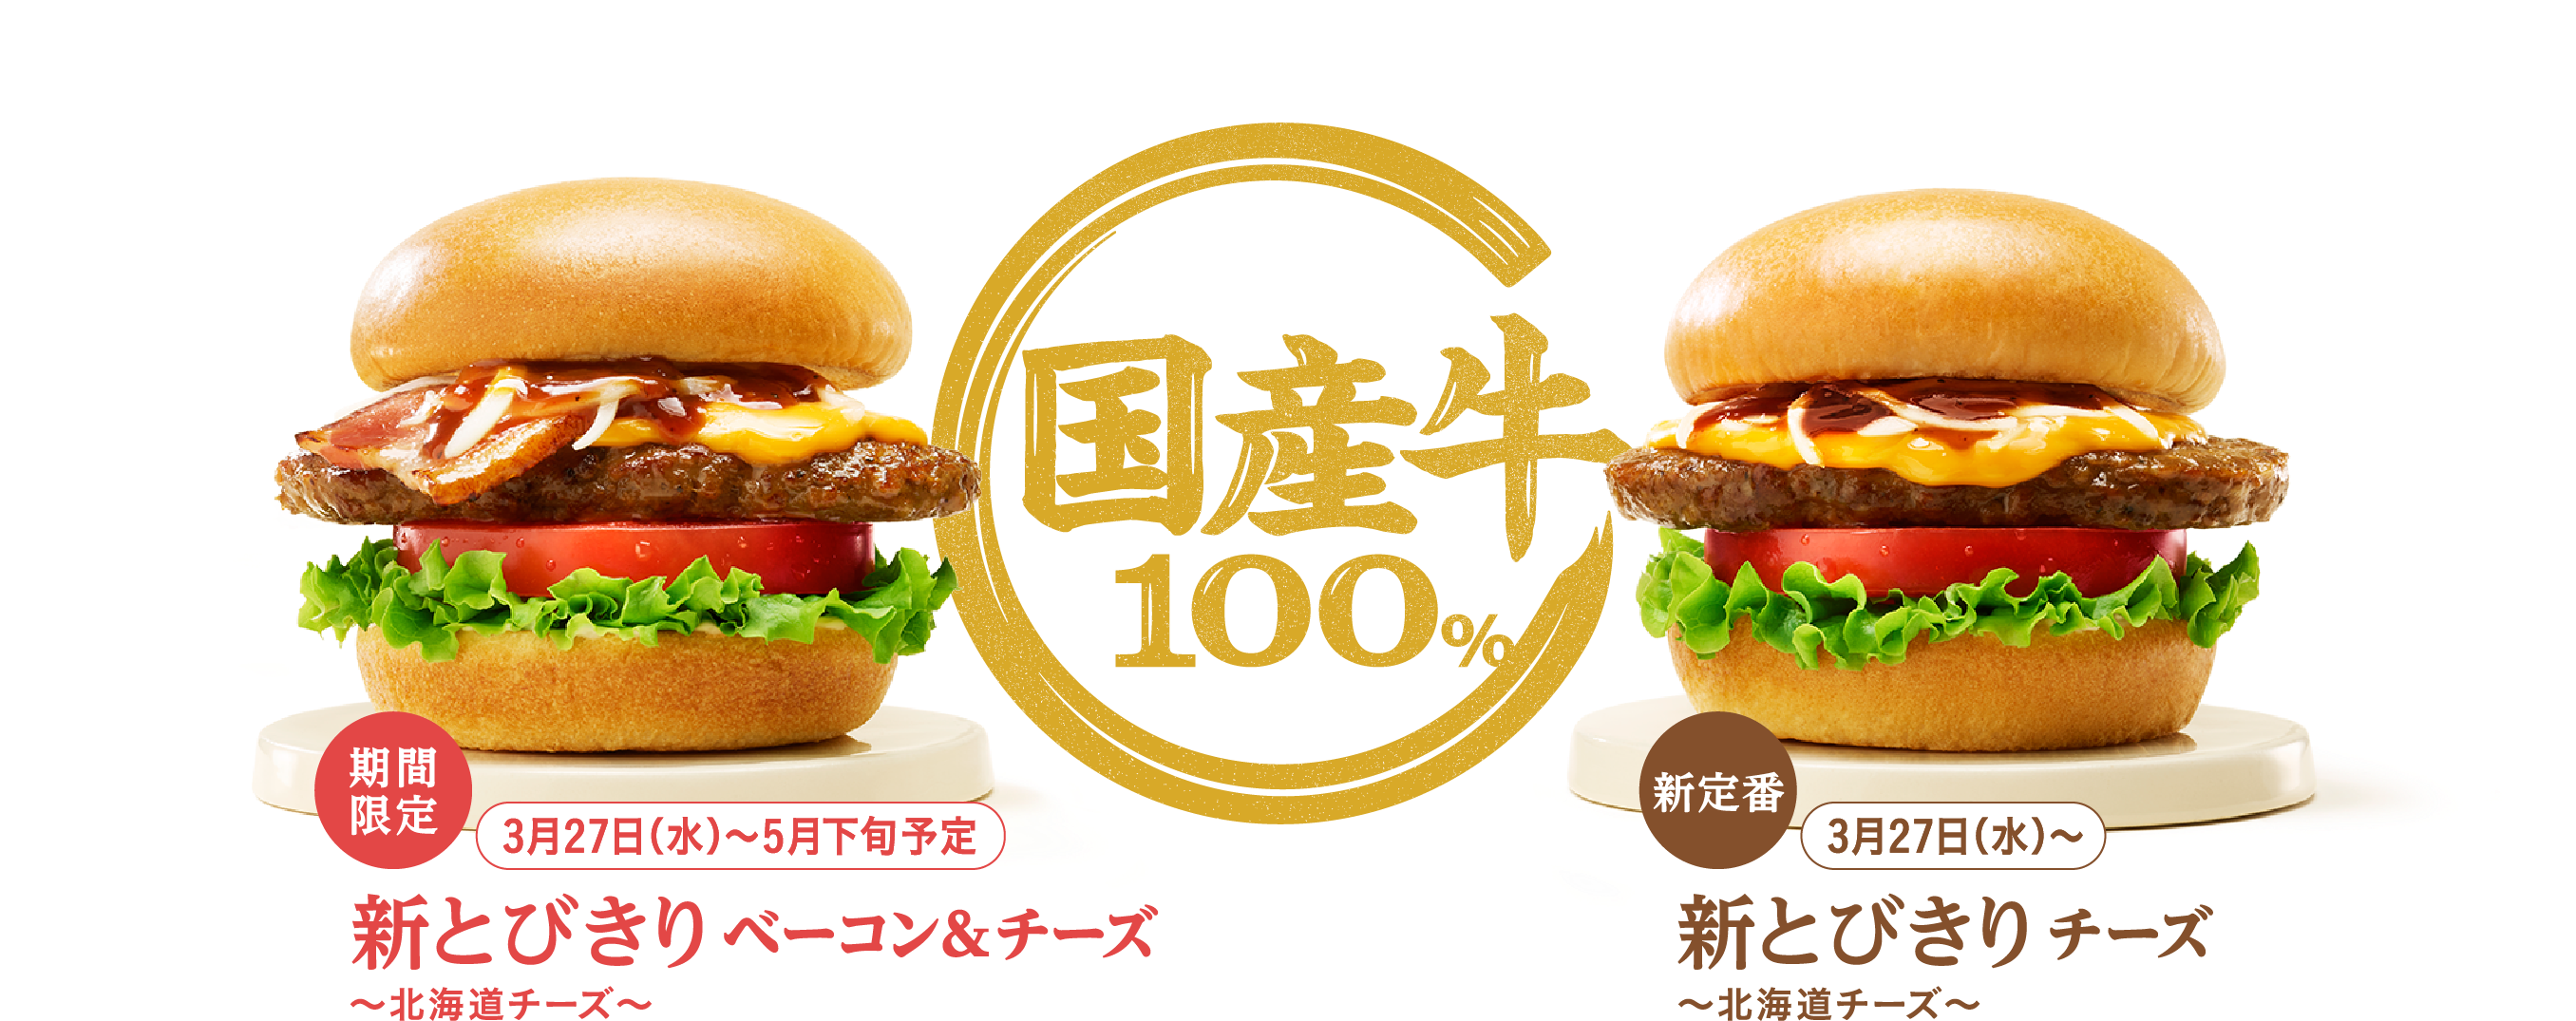 堀江貴文氏　モスバーガー値上げで消費者離れを危惧 「あんな手間がかかる美味しいハンバーガーをあんな安値で出すからダメなんよ」